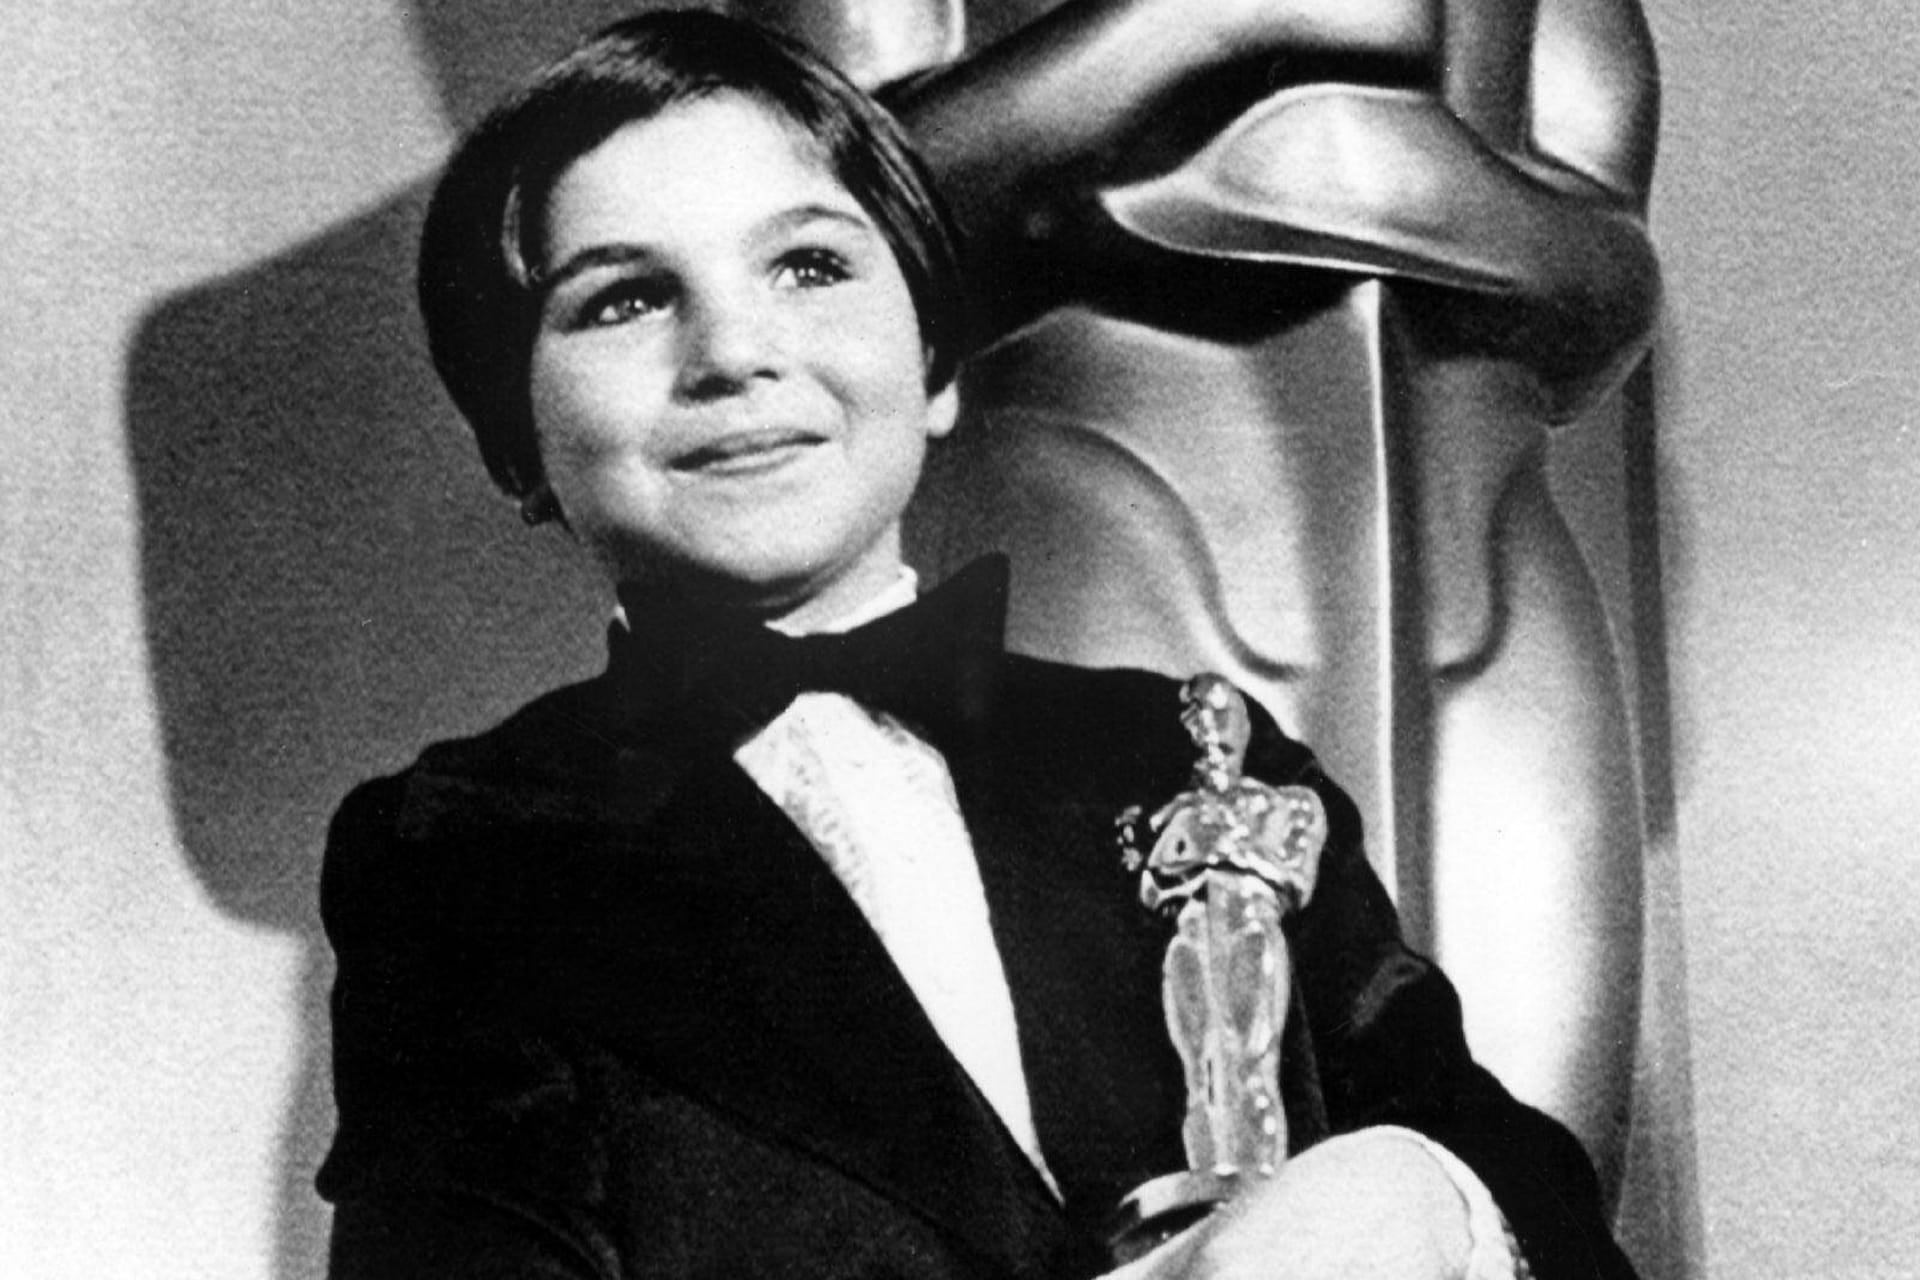 Tatum O'Neal: Die Schauspielerin ist die jüngste Gewinnerin. Sie sicherte sich schon mit zehn Jahren den Oscar für ihre Rolle im Film "Paper Moon" (1974). Shirley Temple gewann 1935 mit sechs Jahren den Juvenile Award, eine Miniatur-Ausgabe des regulären Oscars.